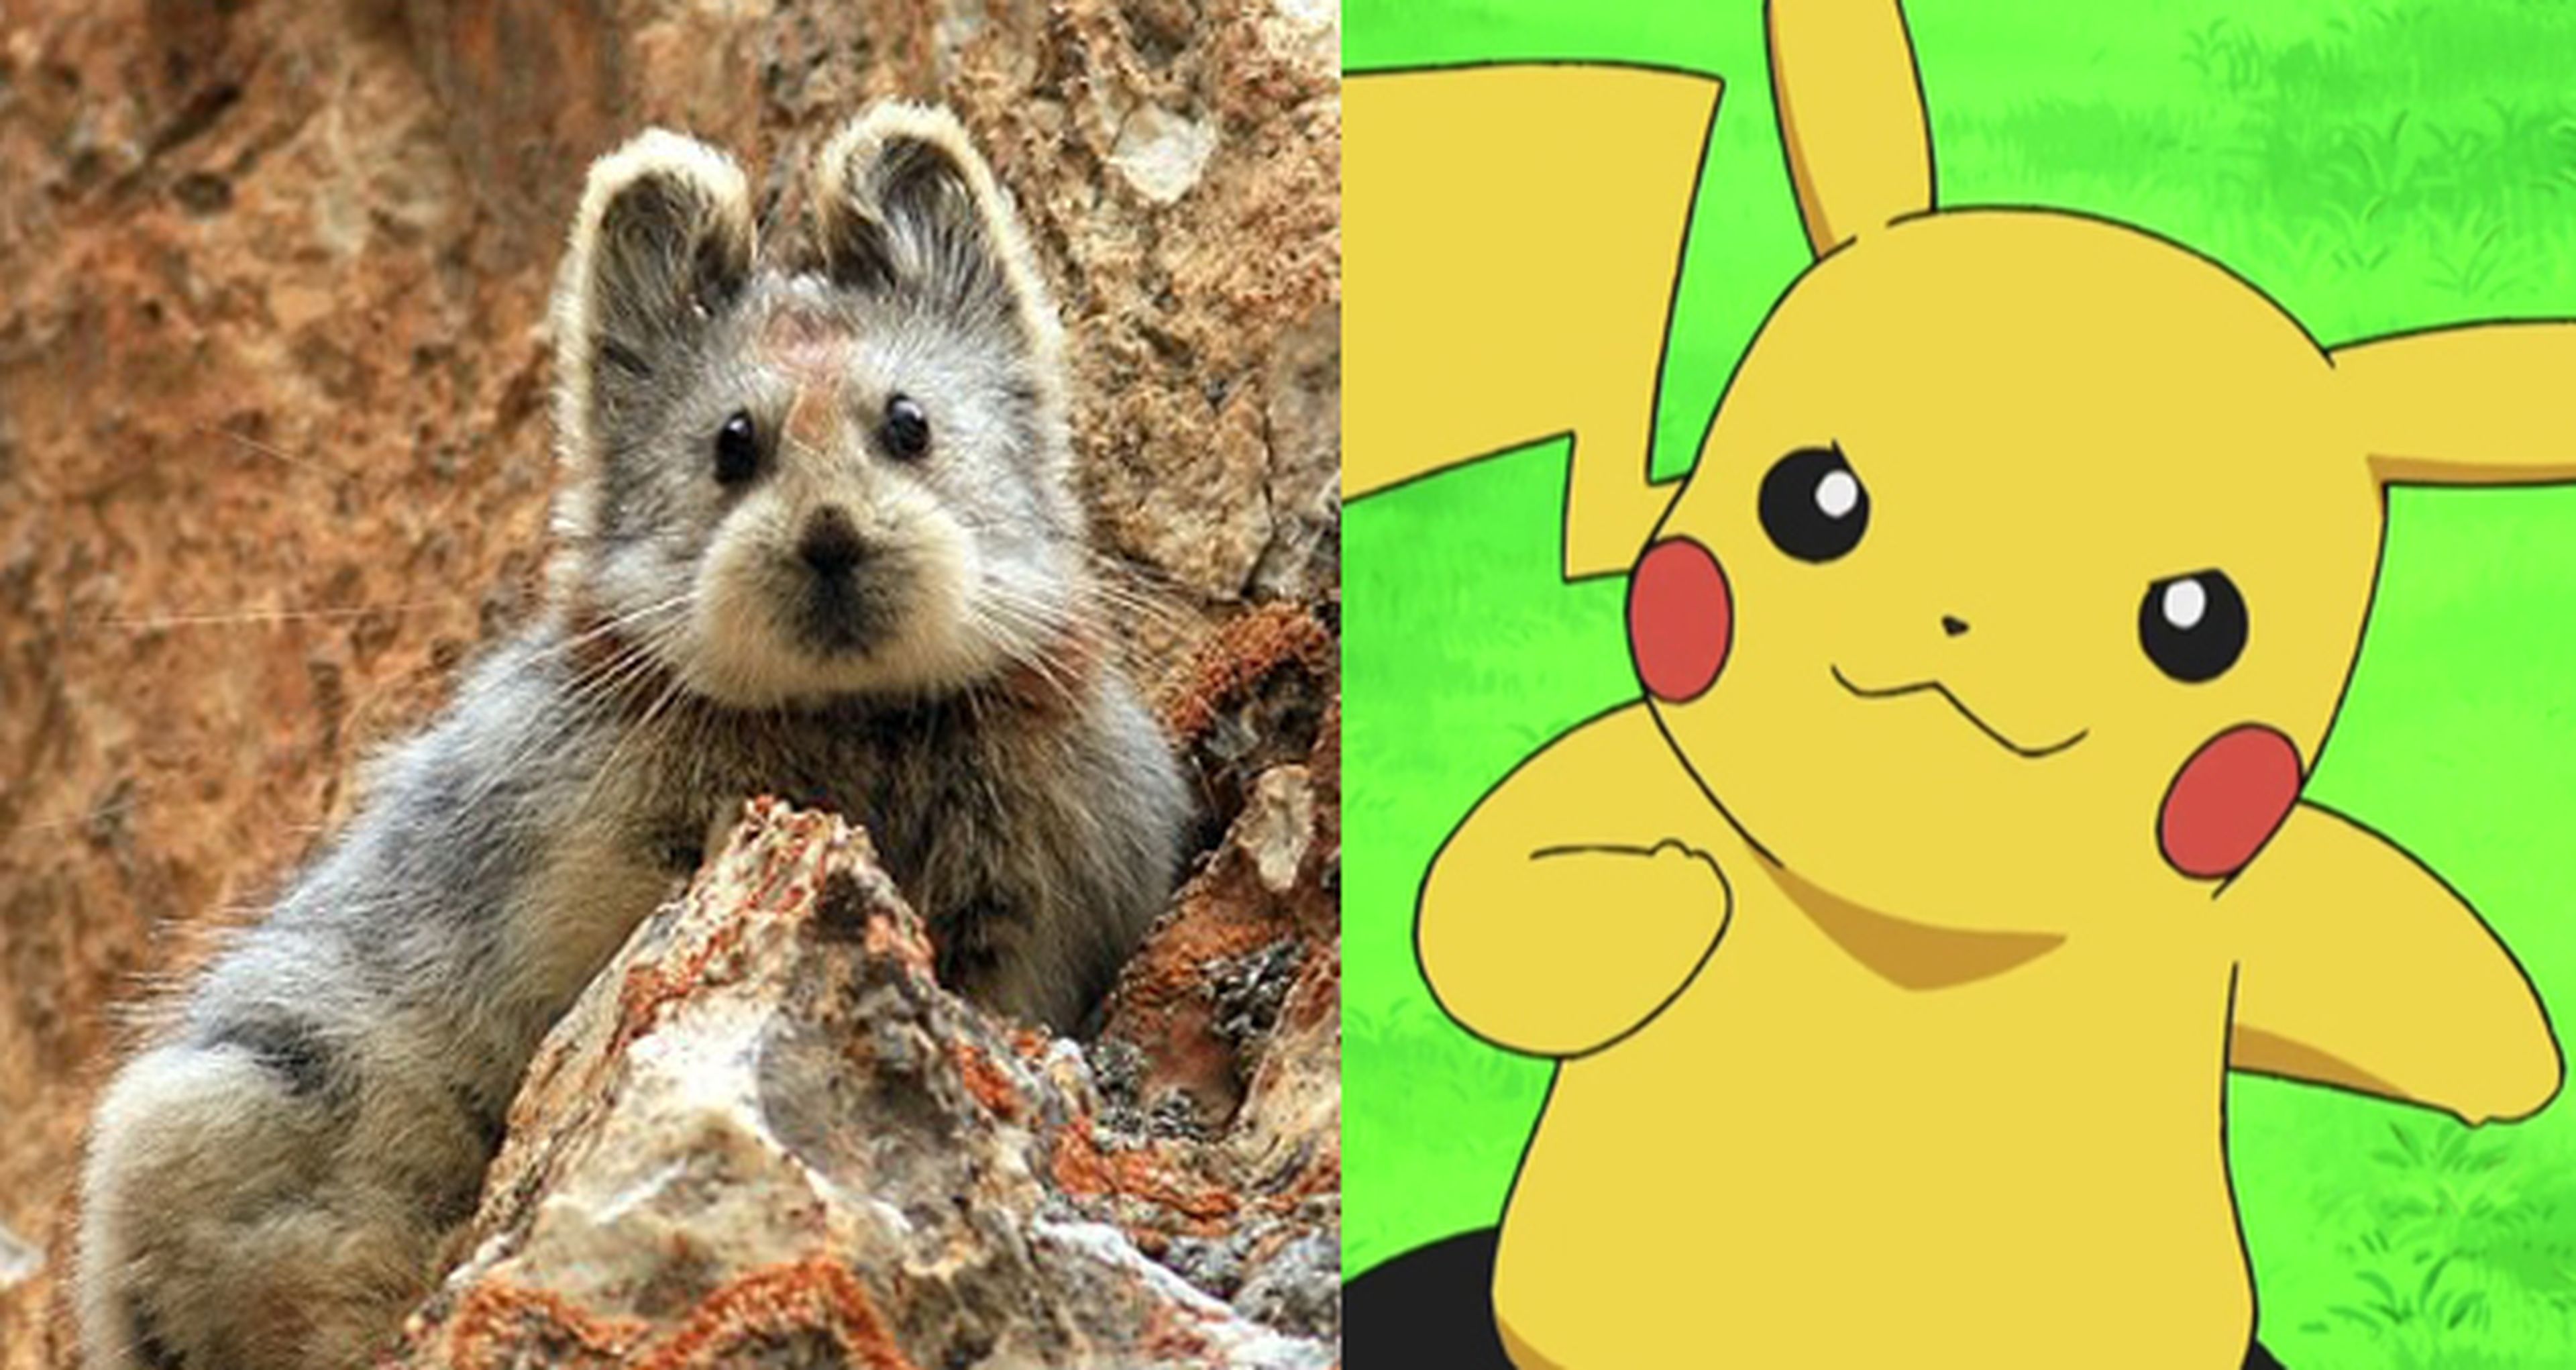 Pika ili: ¿El animal casi extinto que inspiró a Pikachu?